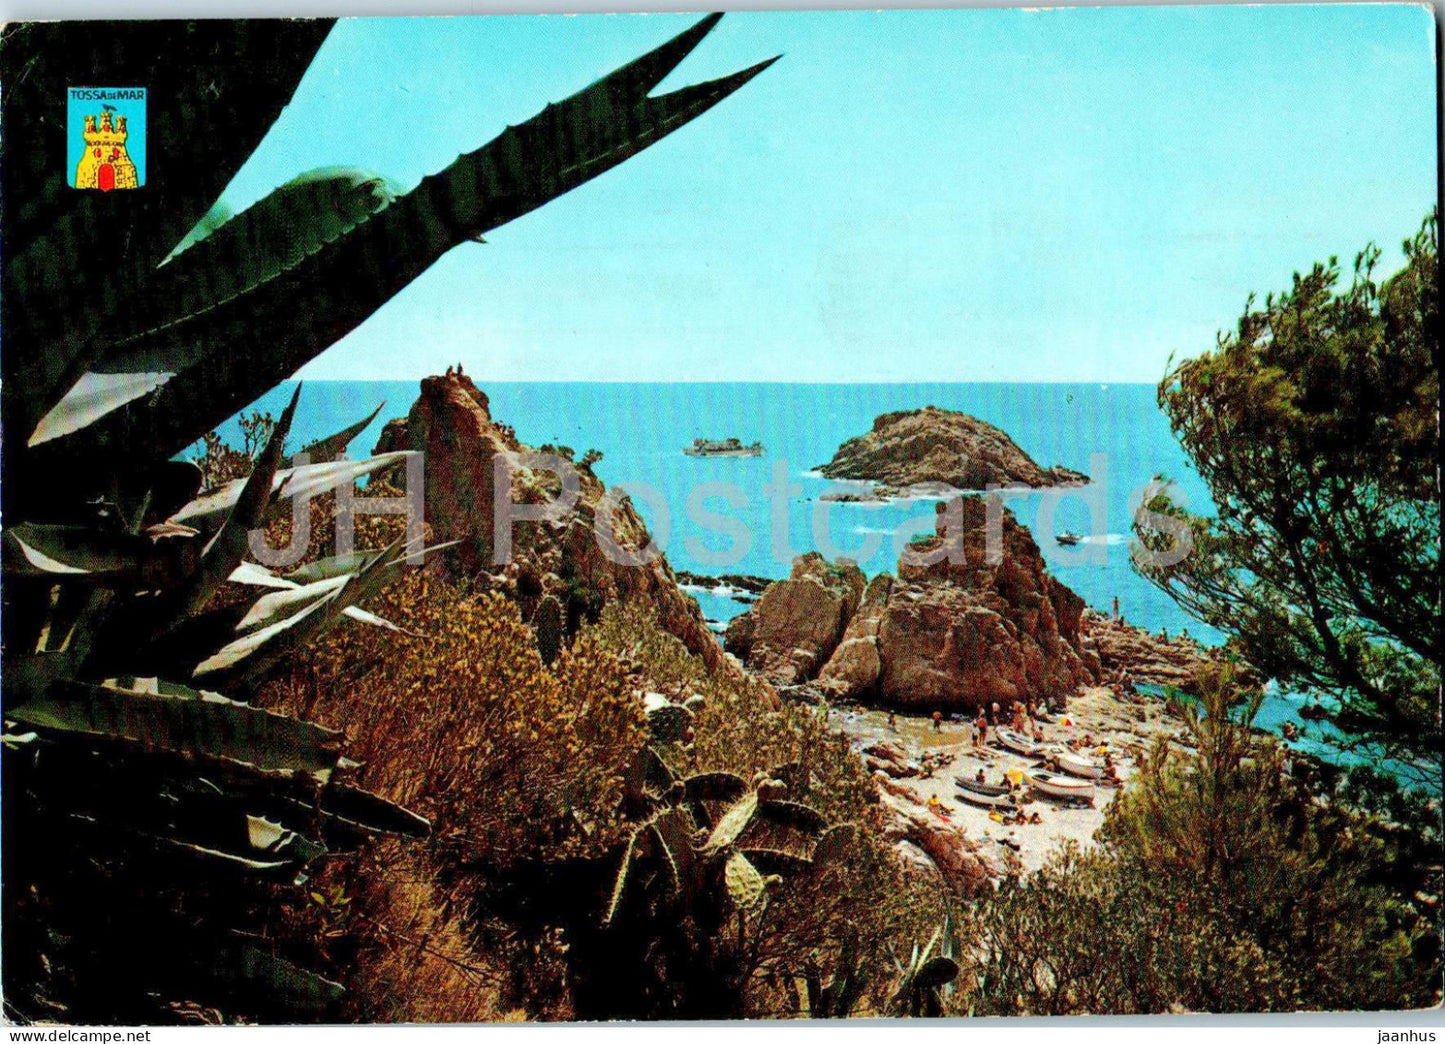 Tossa de Mar - Costa Brava - La Banera de Les Dones - bath tub - 180 - 1962 - Spain - used - JH Postcards